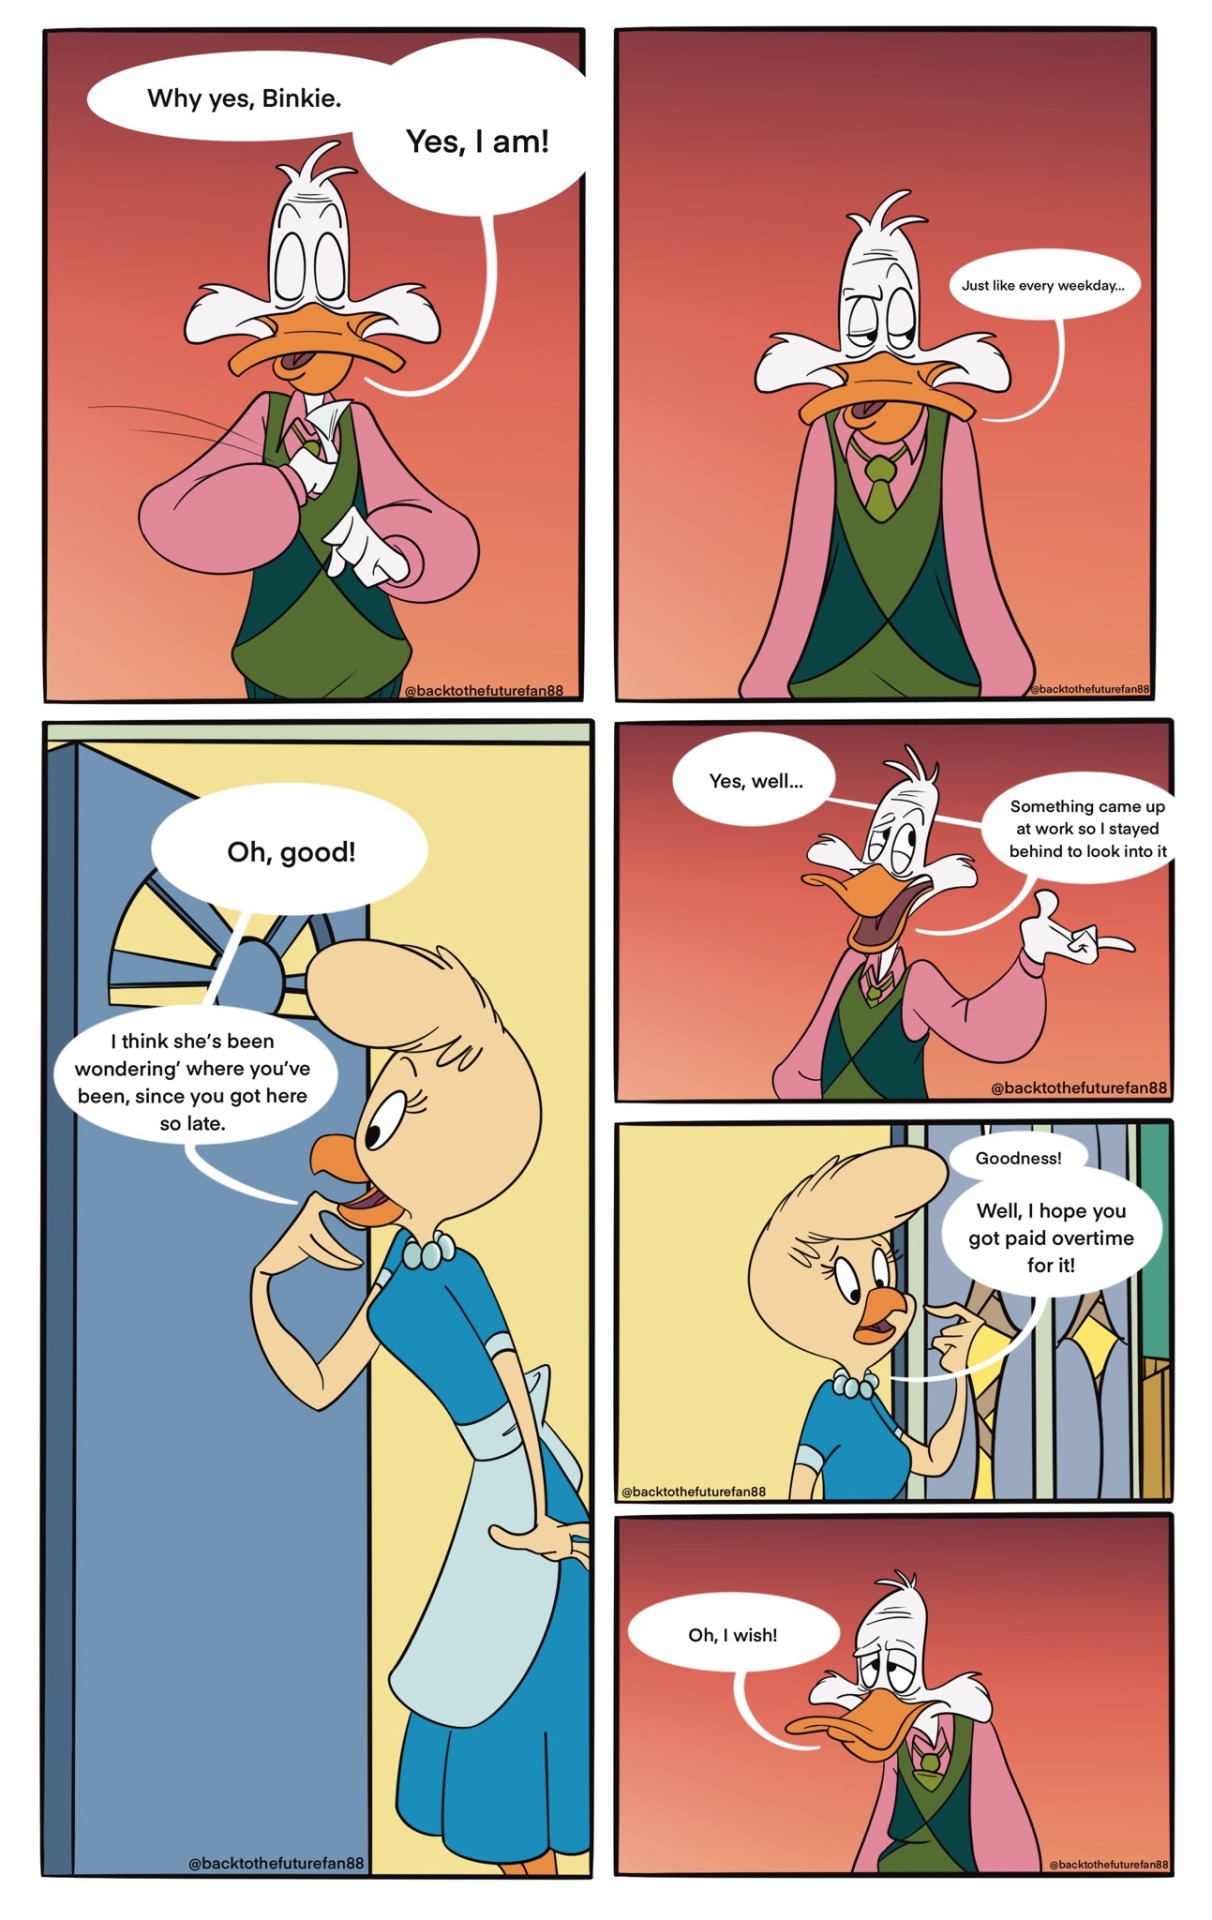 Pikapal's blog: Yu-Gi-Oh! Engrish Comic of the Bootleg Kind